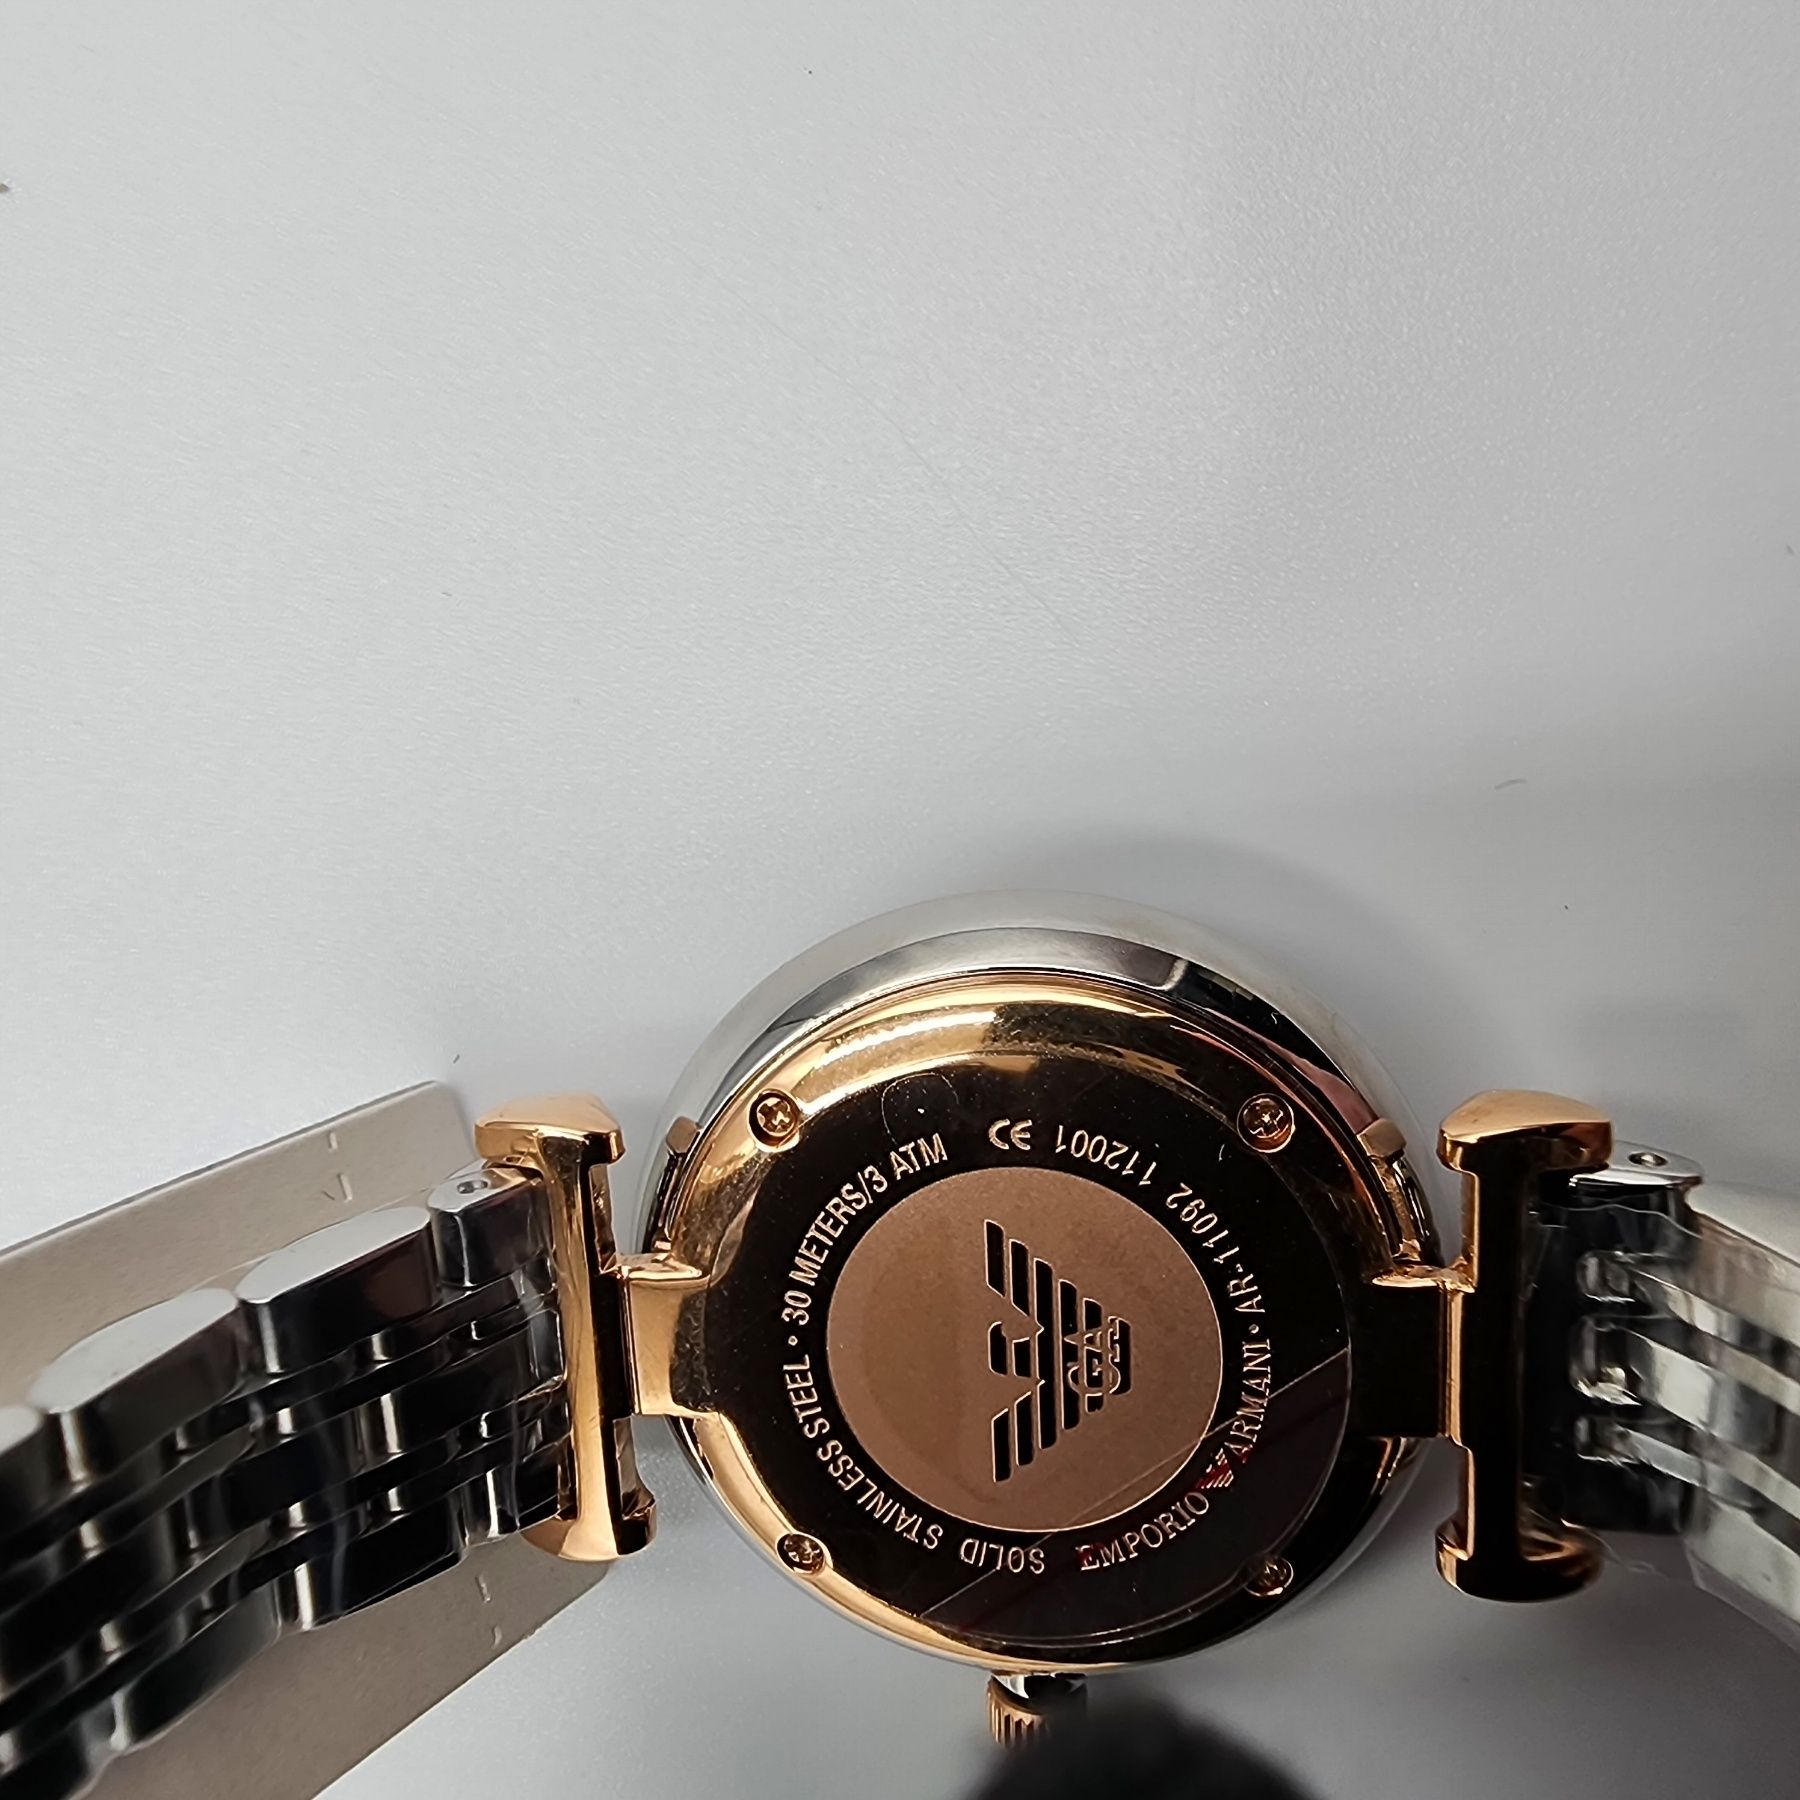 Жіночий годинник Emporio Armani емпоріо армані ar11092 оригінал